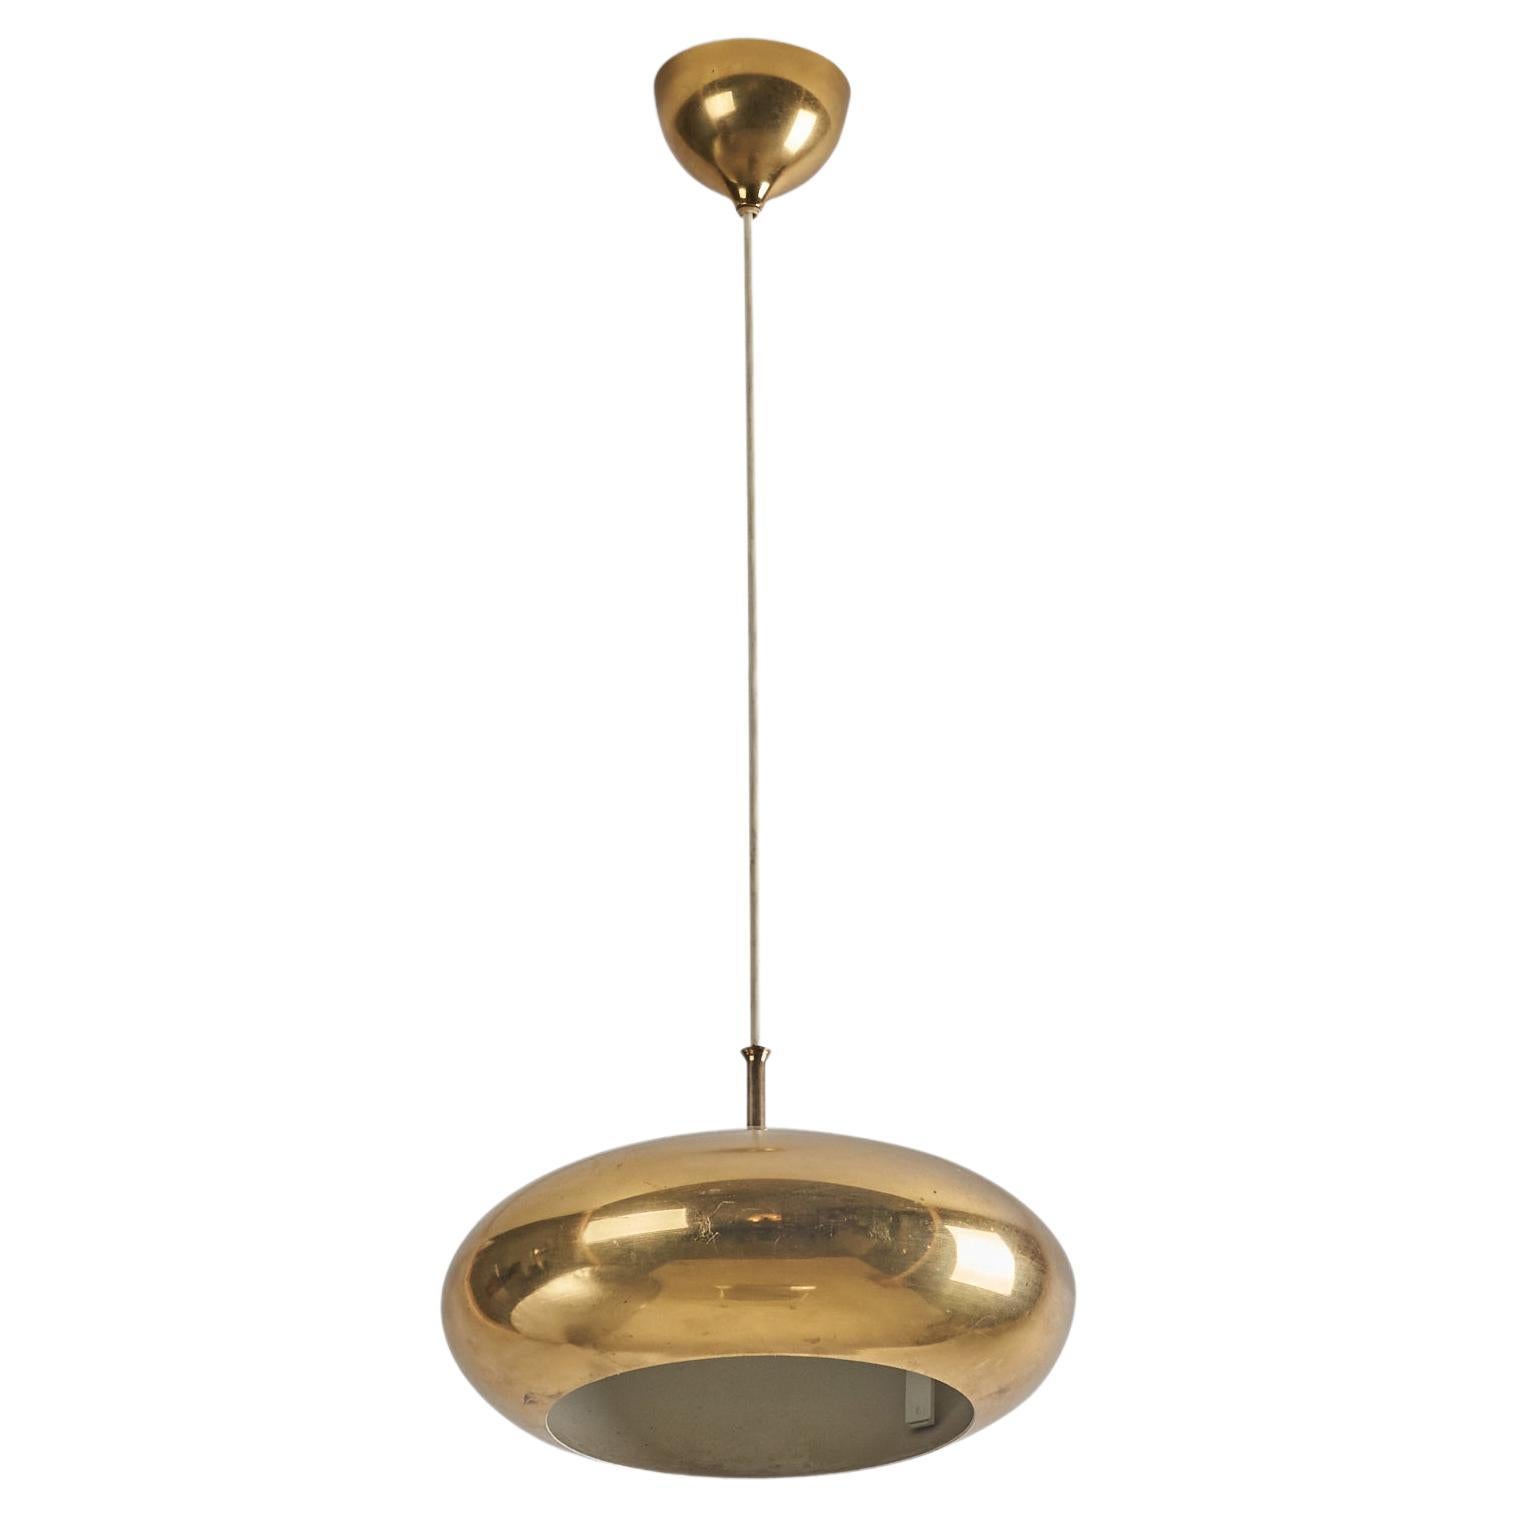 Falkenbergs Belysning, Pendant Lamp, Polished Brass, Sweden, 1960s For Sale